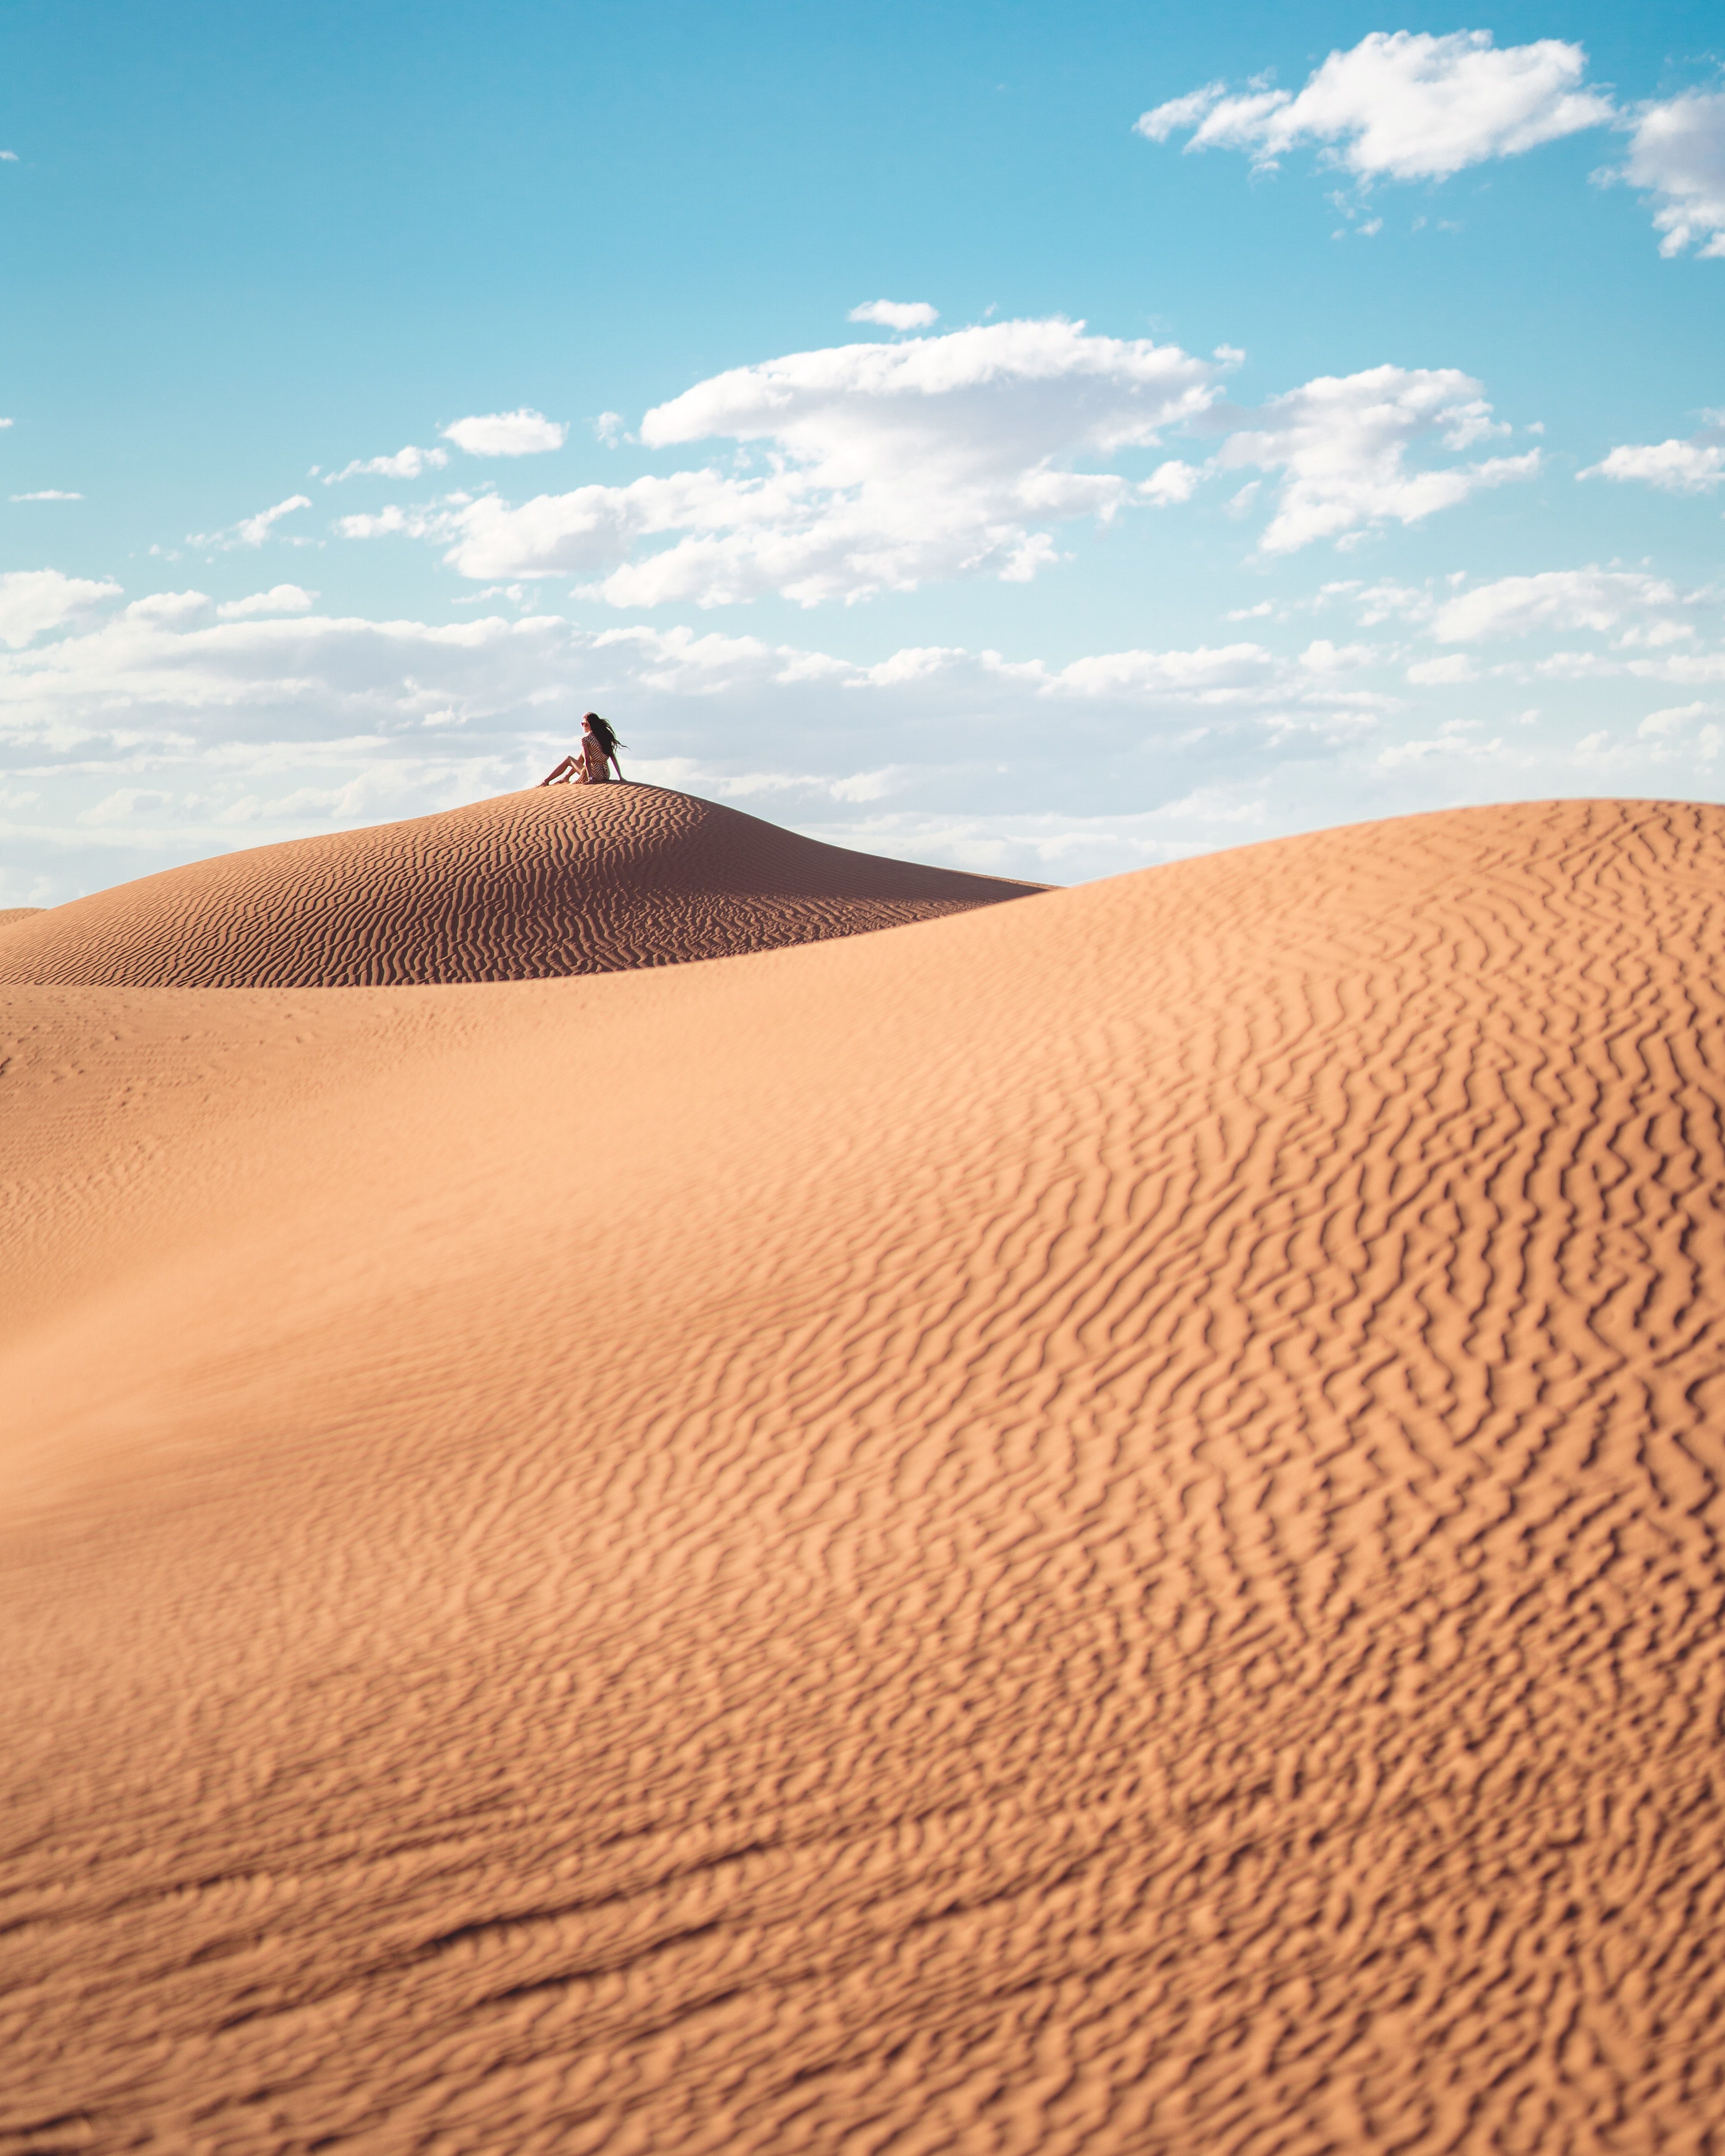 Best Desert Photo · 100% Free Downloads